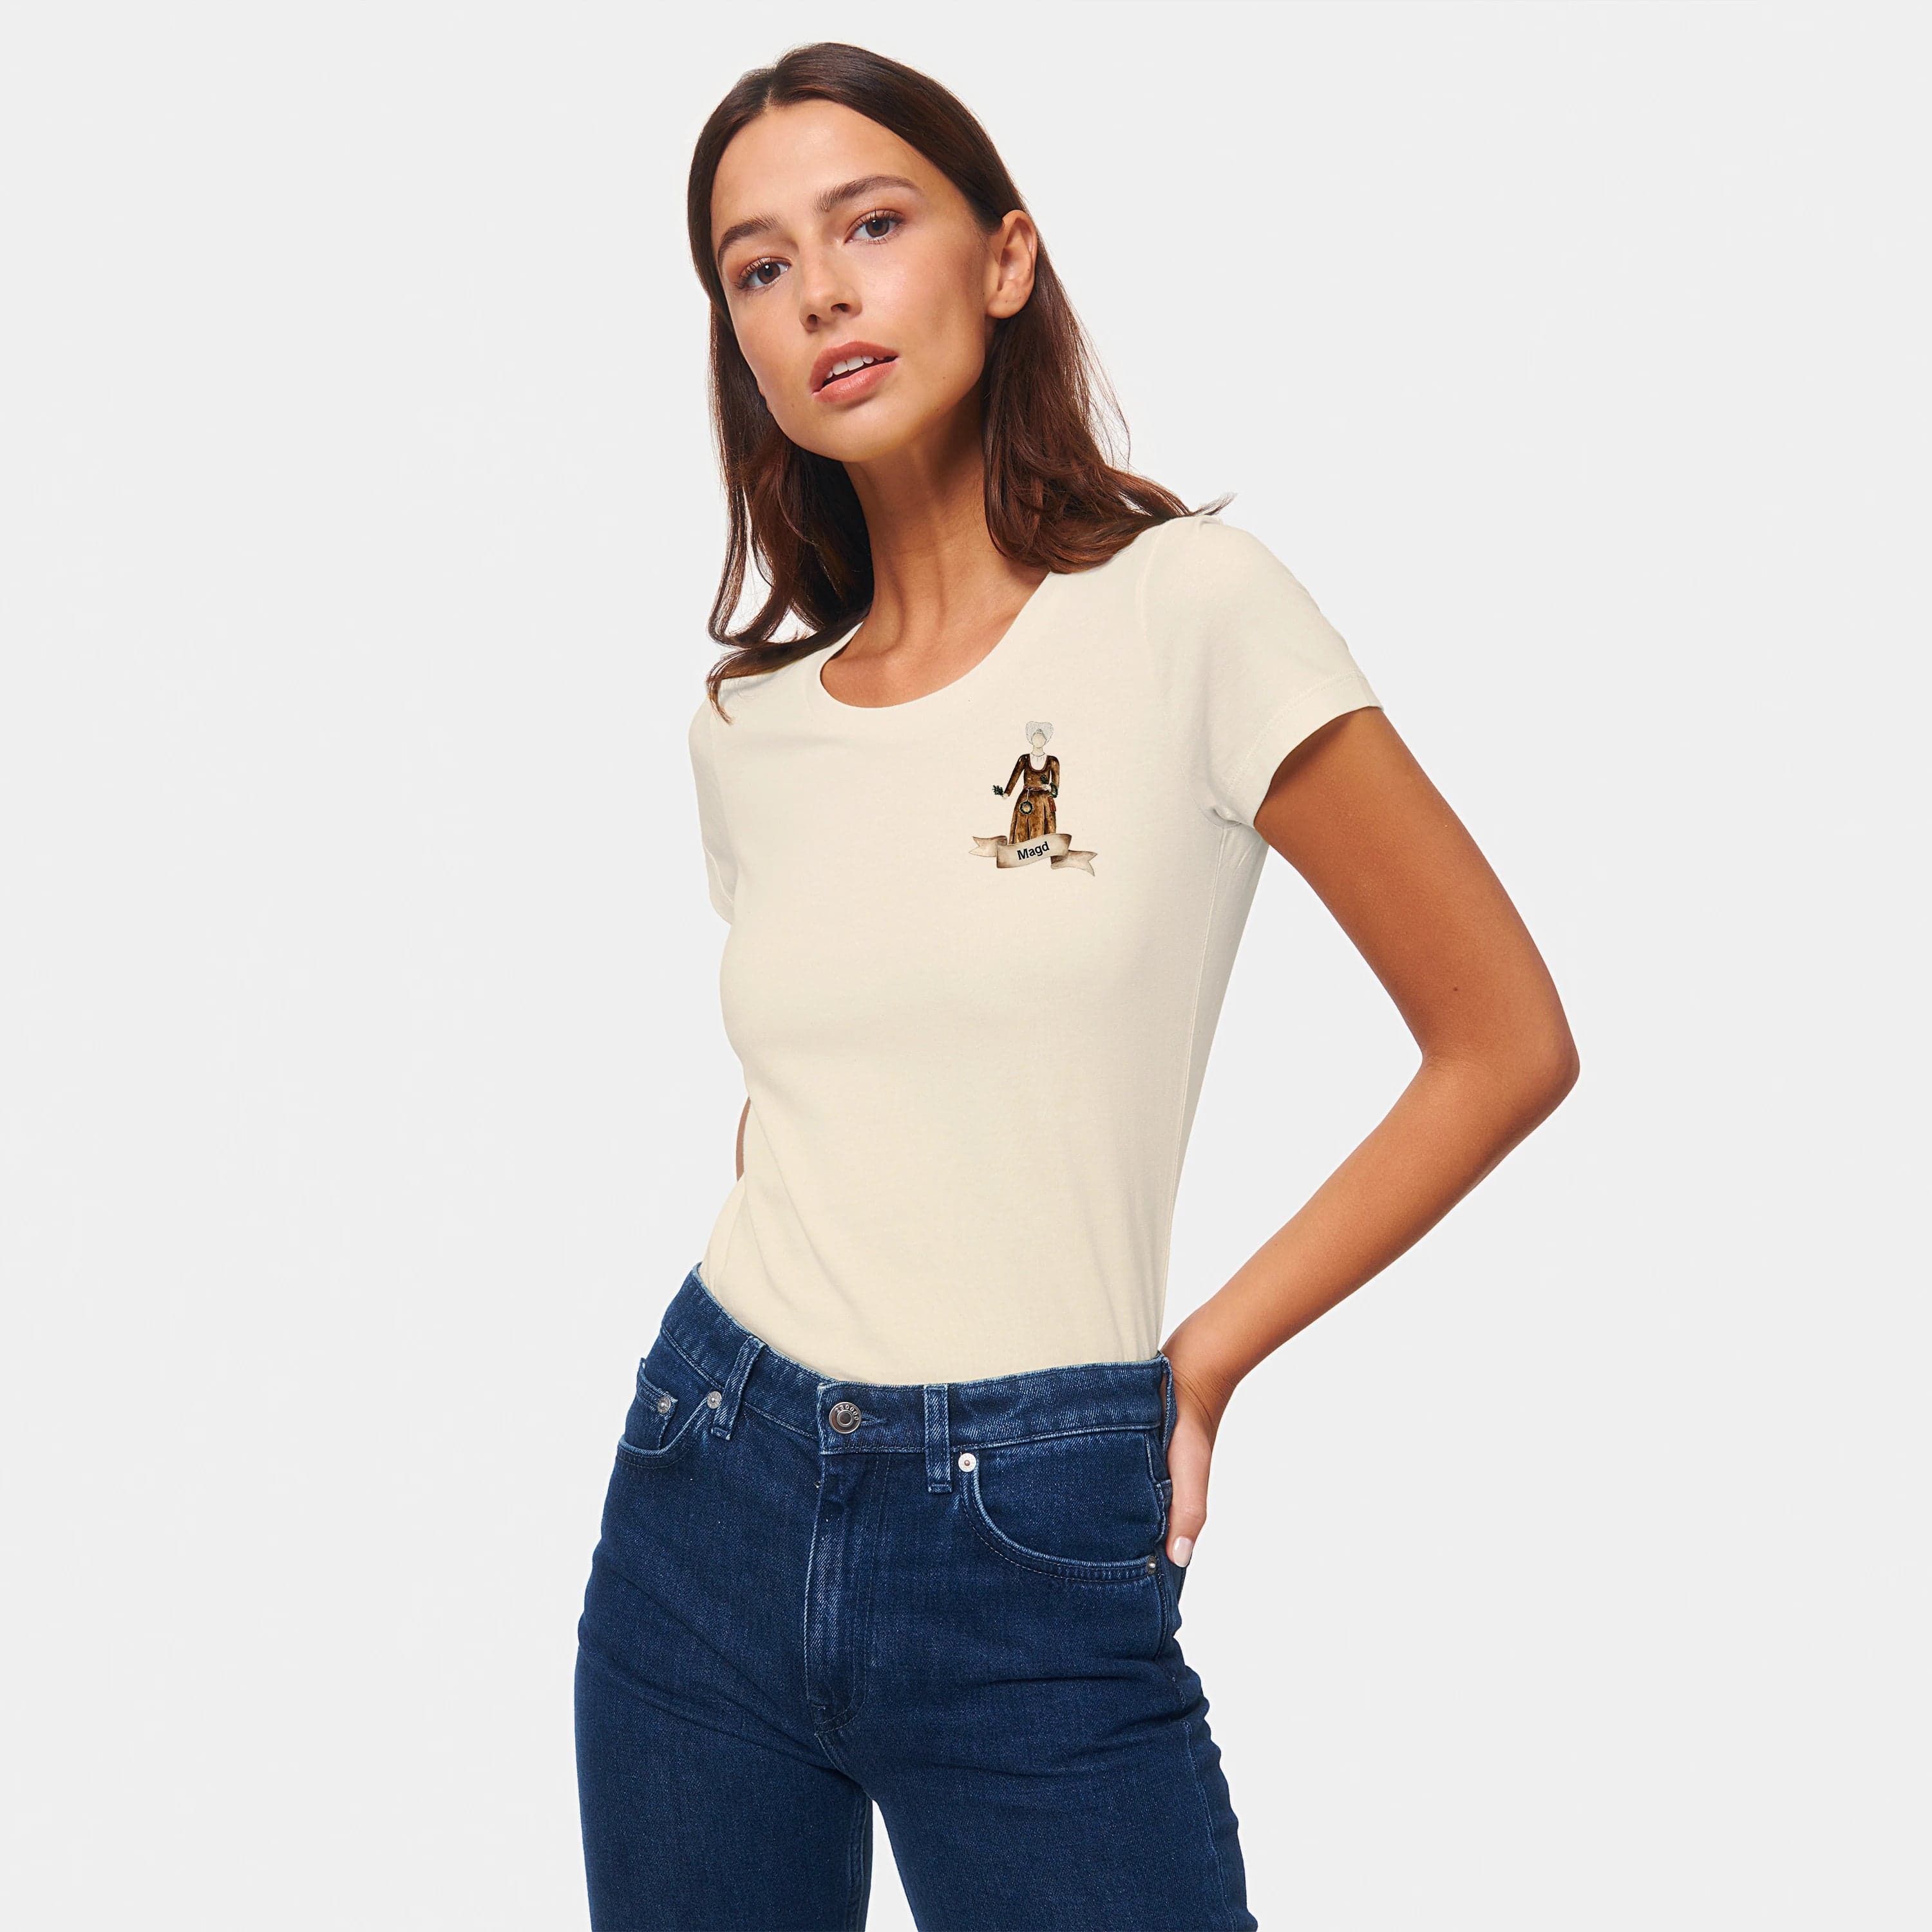 HEITER & LÄSSIG Damen T-Shirt "Magd" XS / natural raw - aus nachhaltiger und fairer Produktion